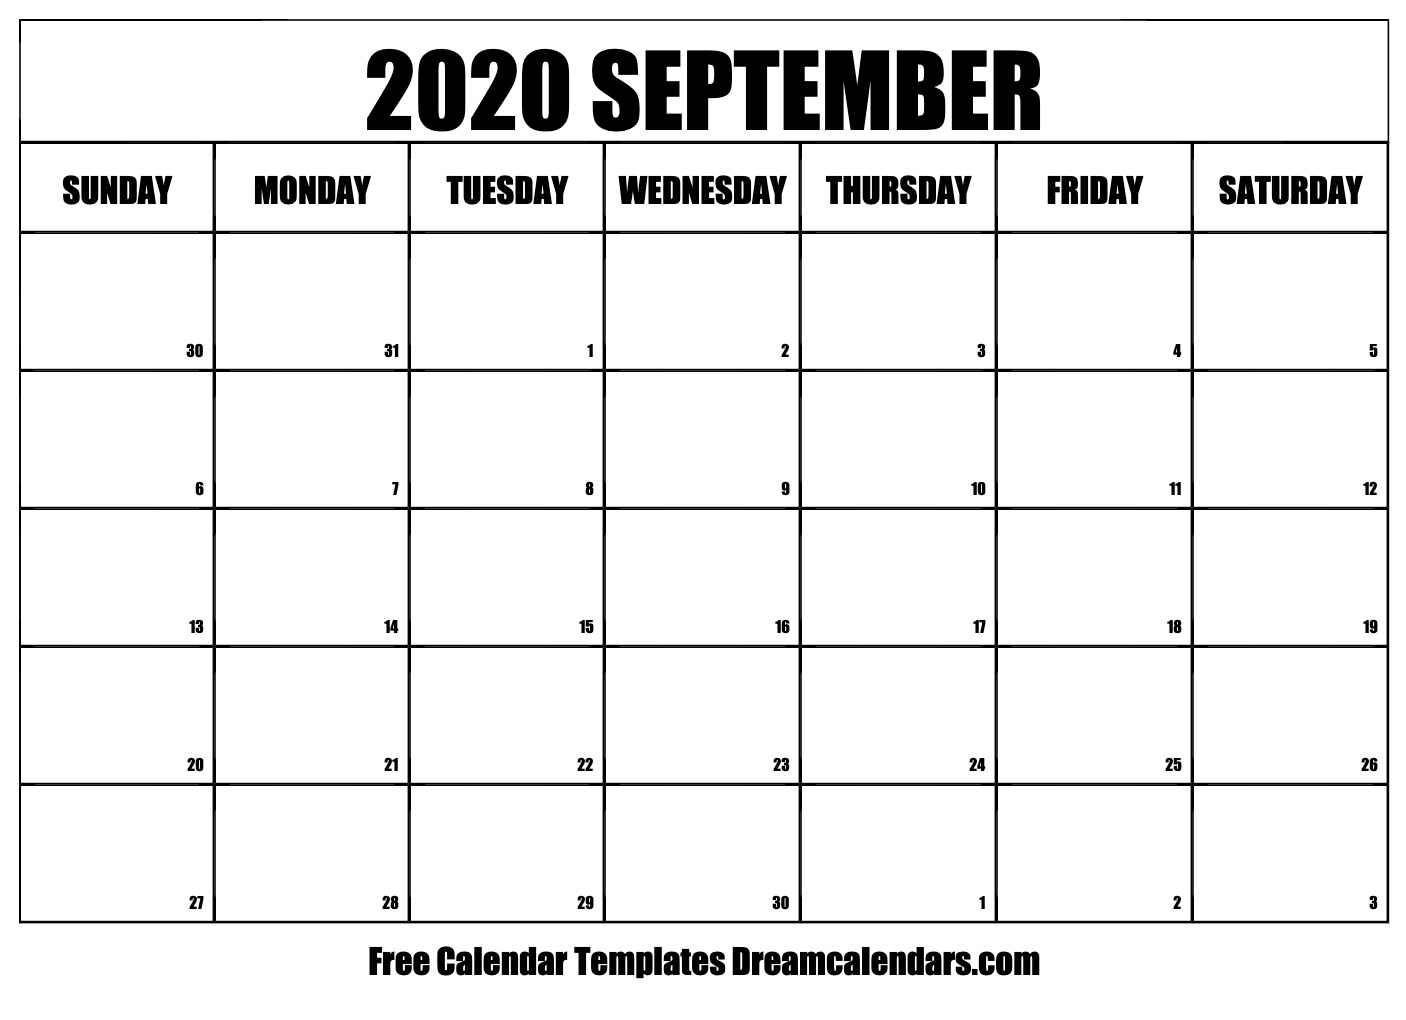 Free September 2020 Printable Calendar Dream Calendars